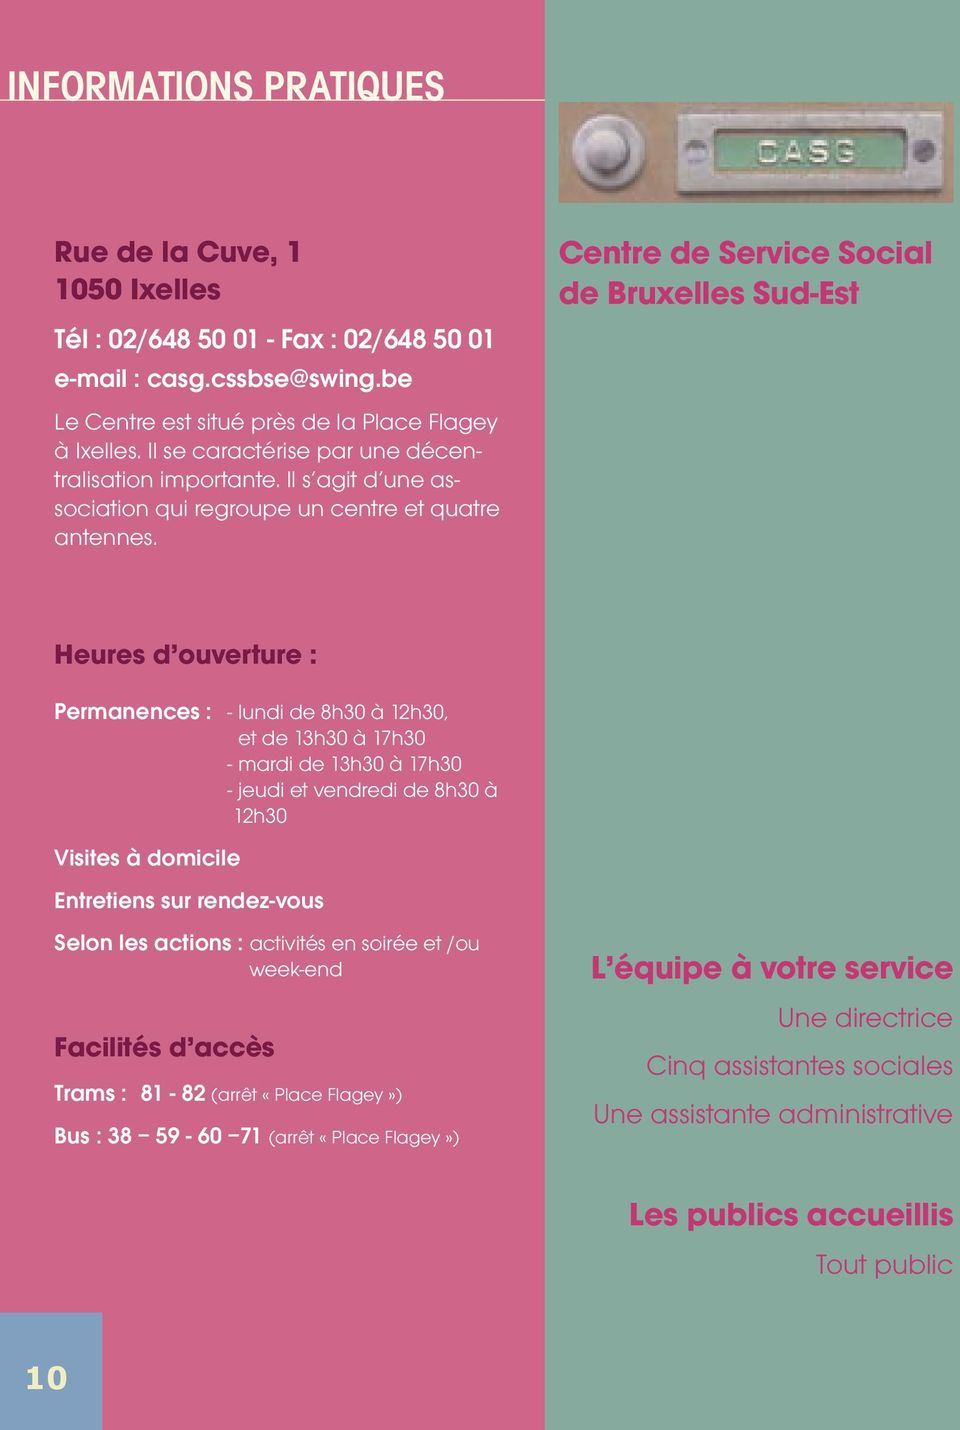 Centre de Service Social de Bruxelles Sud-Est Heures d ouverture : Permanences : - lundi de 8h30 à 12h30, et de 13h30 à 17h30 - mardi de 13h30 à 17h30 - jeudi et vendredi de 8h30 à 12h30 Visites à